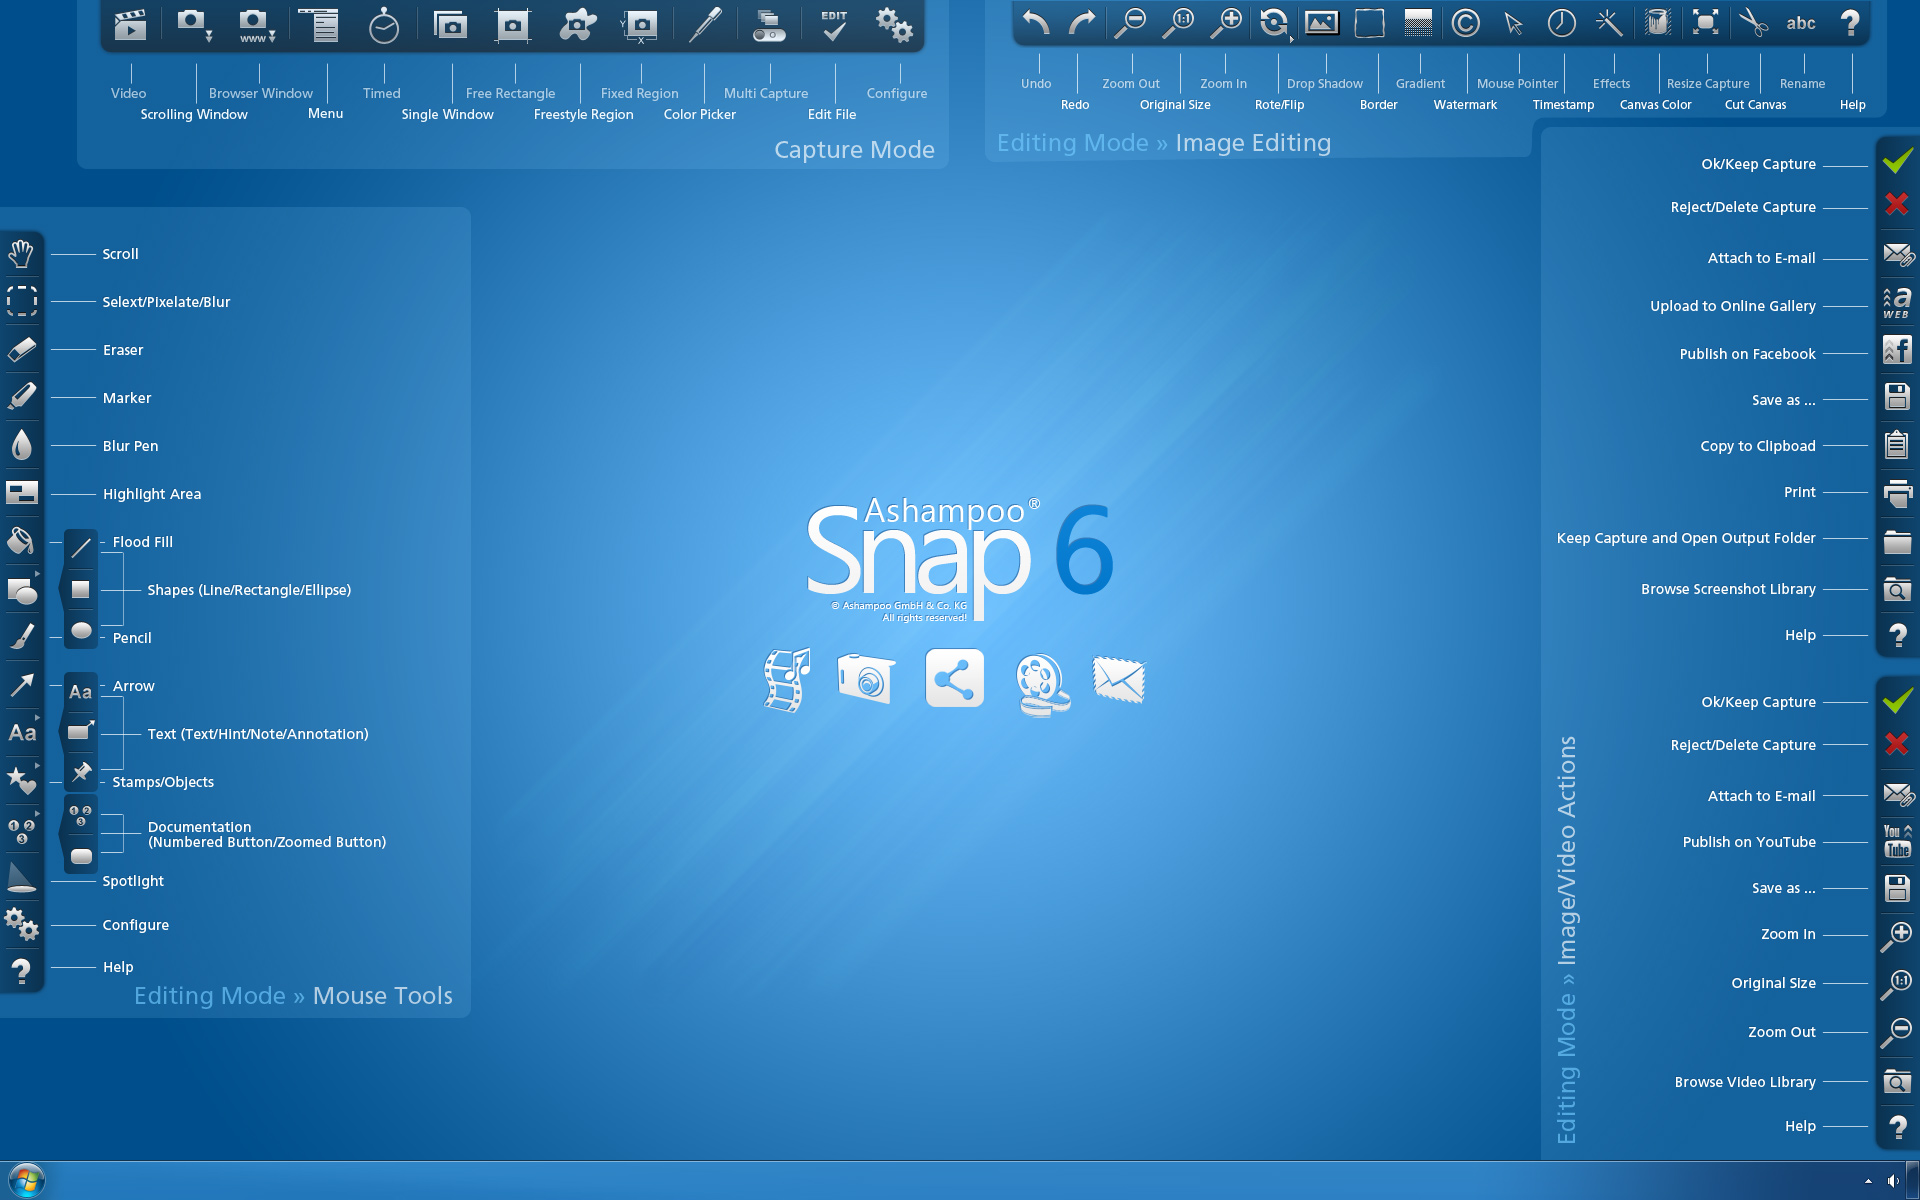 البرنامج المتميز فى تصوير مايدور على شاشة الكمبيوتر Ashampoo Snap 6.0.6 Final Scr_ashampoo_snap_6_en_overview_functions